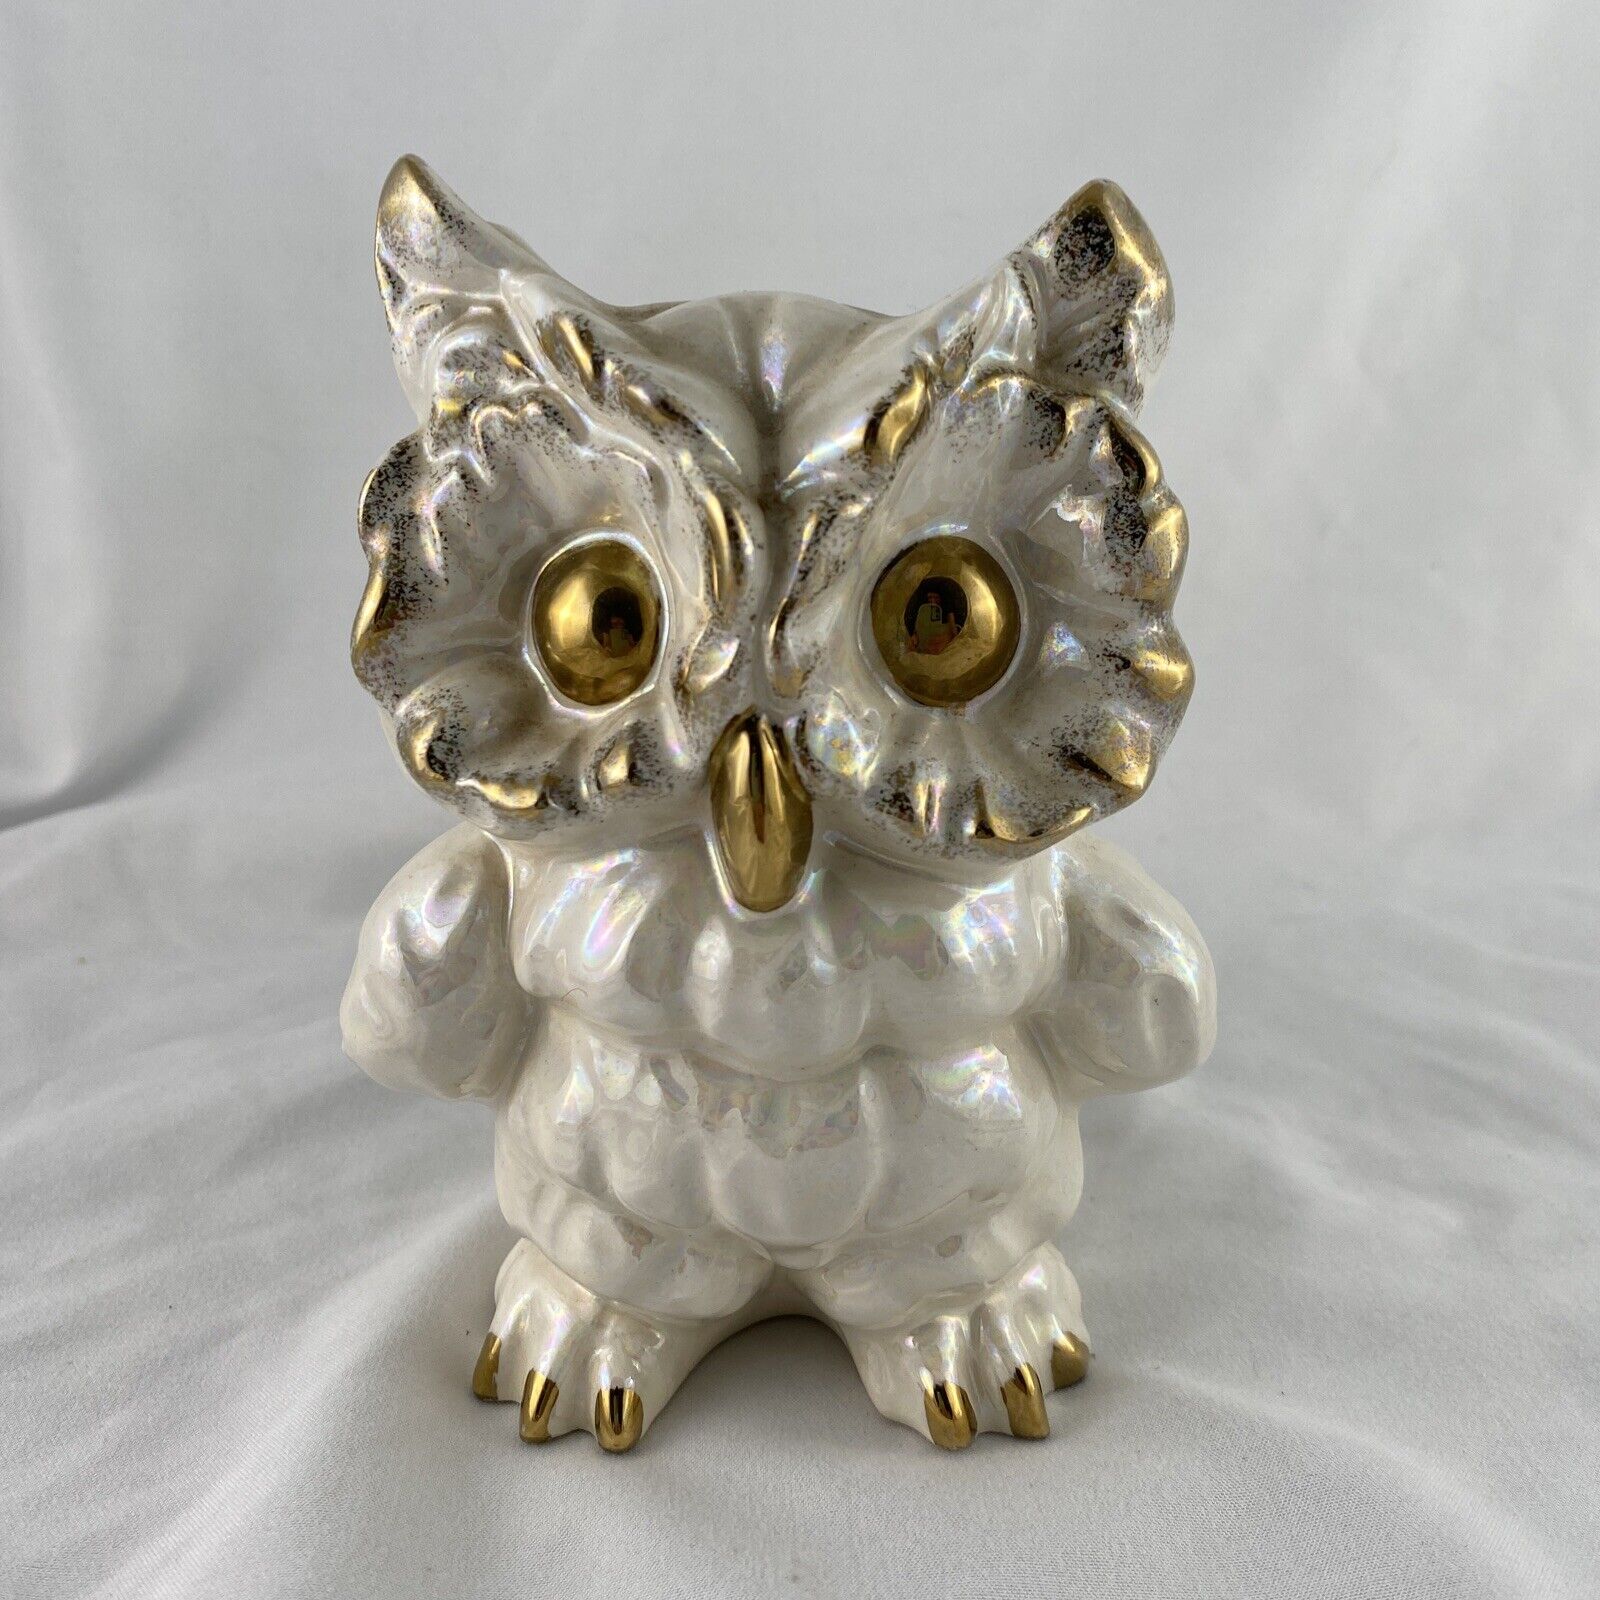 Vintage MCM Ceramic Norcrest Owl Bank Pearlescent White & Gold Japan